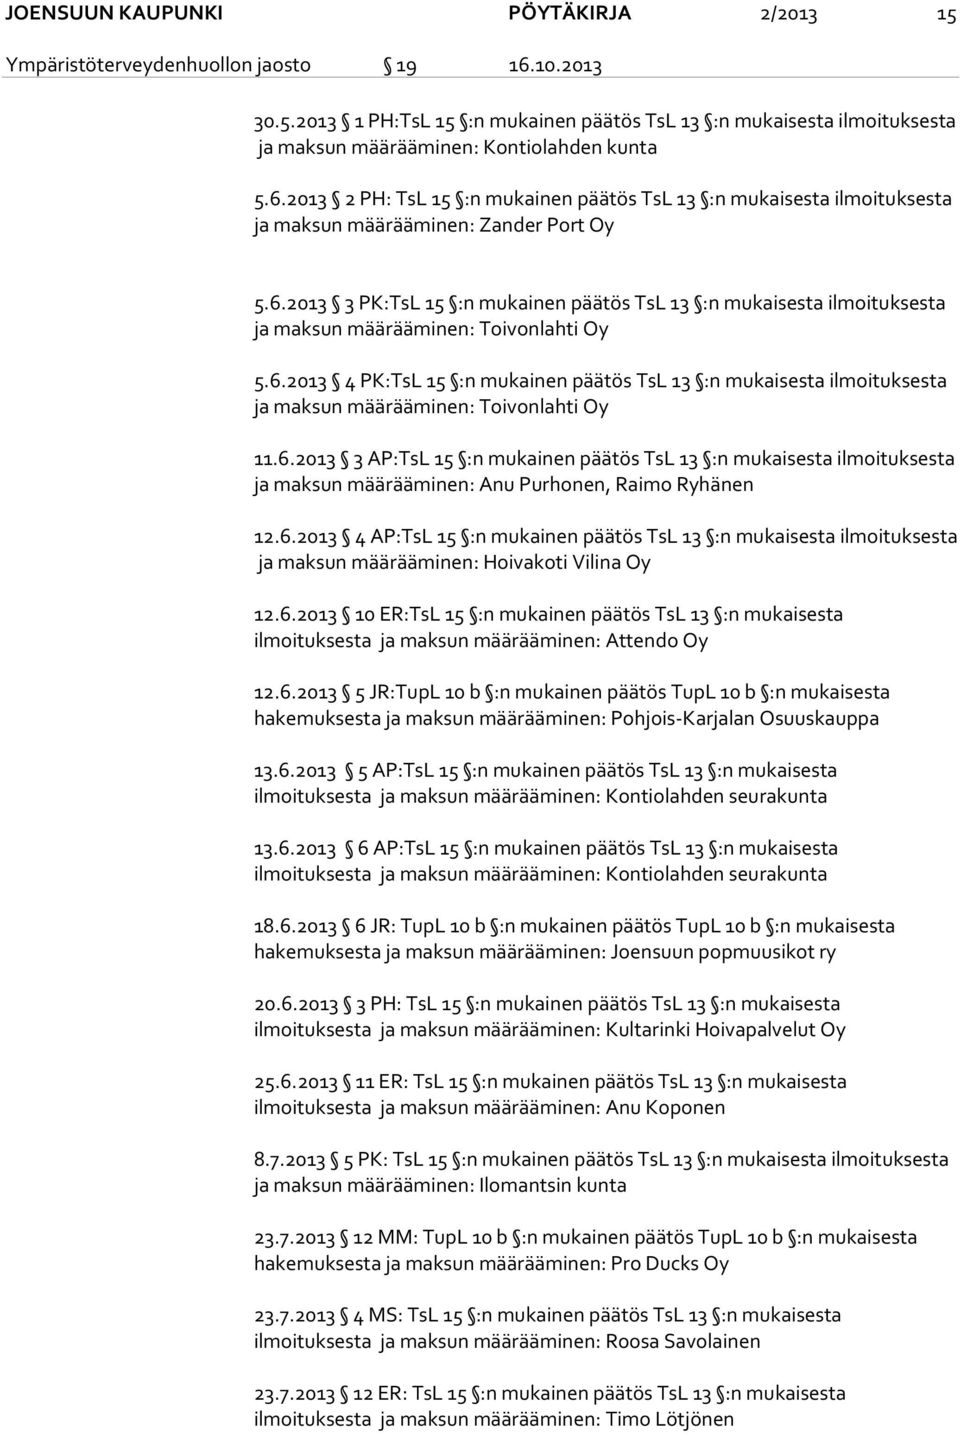 6.2013 4 PK:TsL 15 :n mukainen päätös TsL 13 :n mukaisesta ilmoituksesta ja maksun määrääminen: Toivonlahti Oy 11.6.2013 3 AP:TsL 15 :n mukainen päätös TsL 13 :n mukaisesta ilmoituksesta ja maksun määrääminen: Anu Purhonen, Raimo Ryhänen 12.